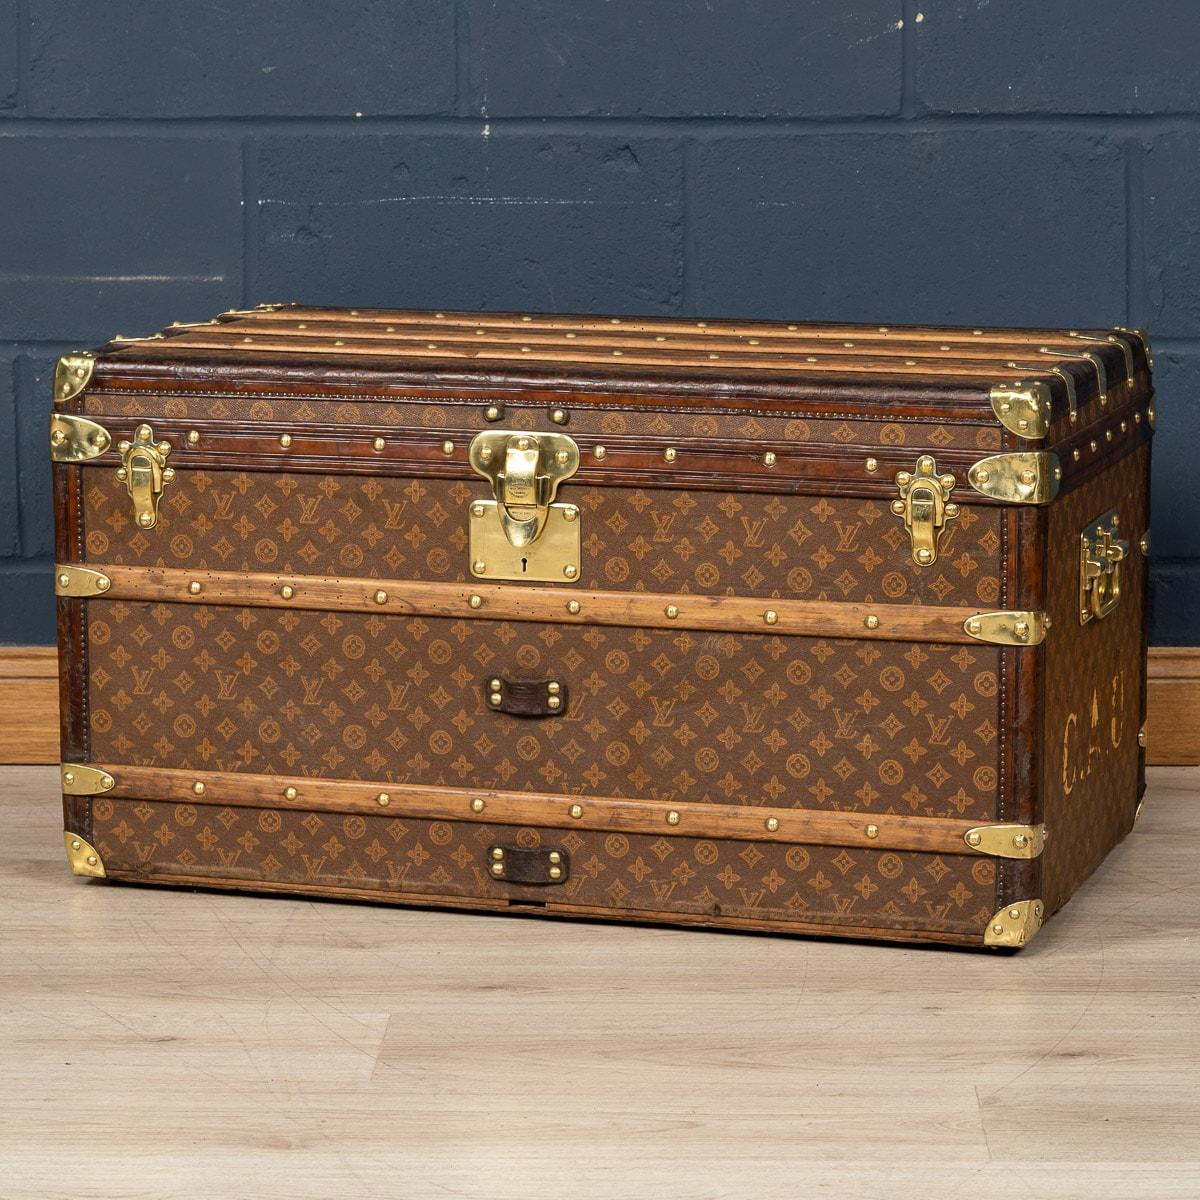 Dieser prächtige und vor allem vollständige Louis Vuitton-Koffer aus dem frühen 20. Jahrhundert war ein Muss für jeden Elitereisenden. Die mit dem weltberühmten LV-Monogramm versehene Leinwand mit Lederbesatz und Messingbeschlägen wäre schon zum